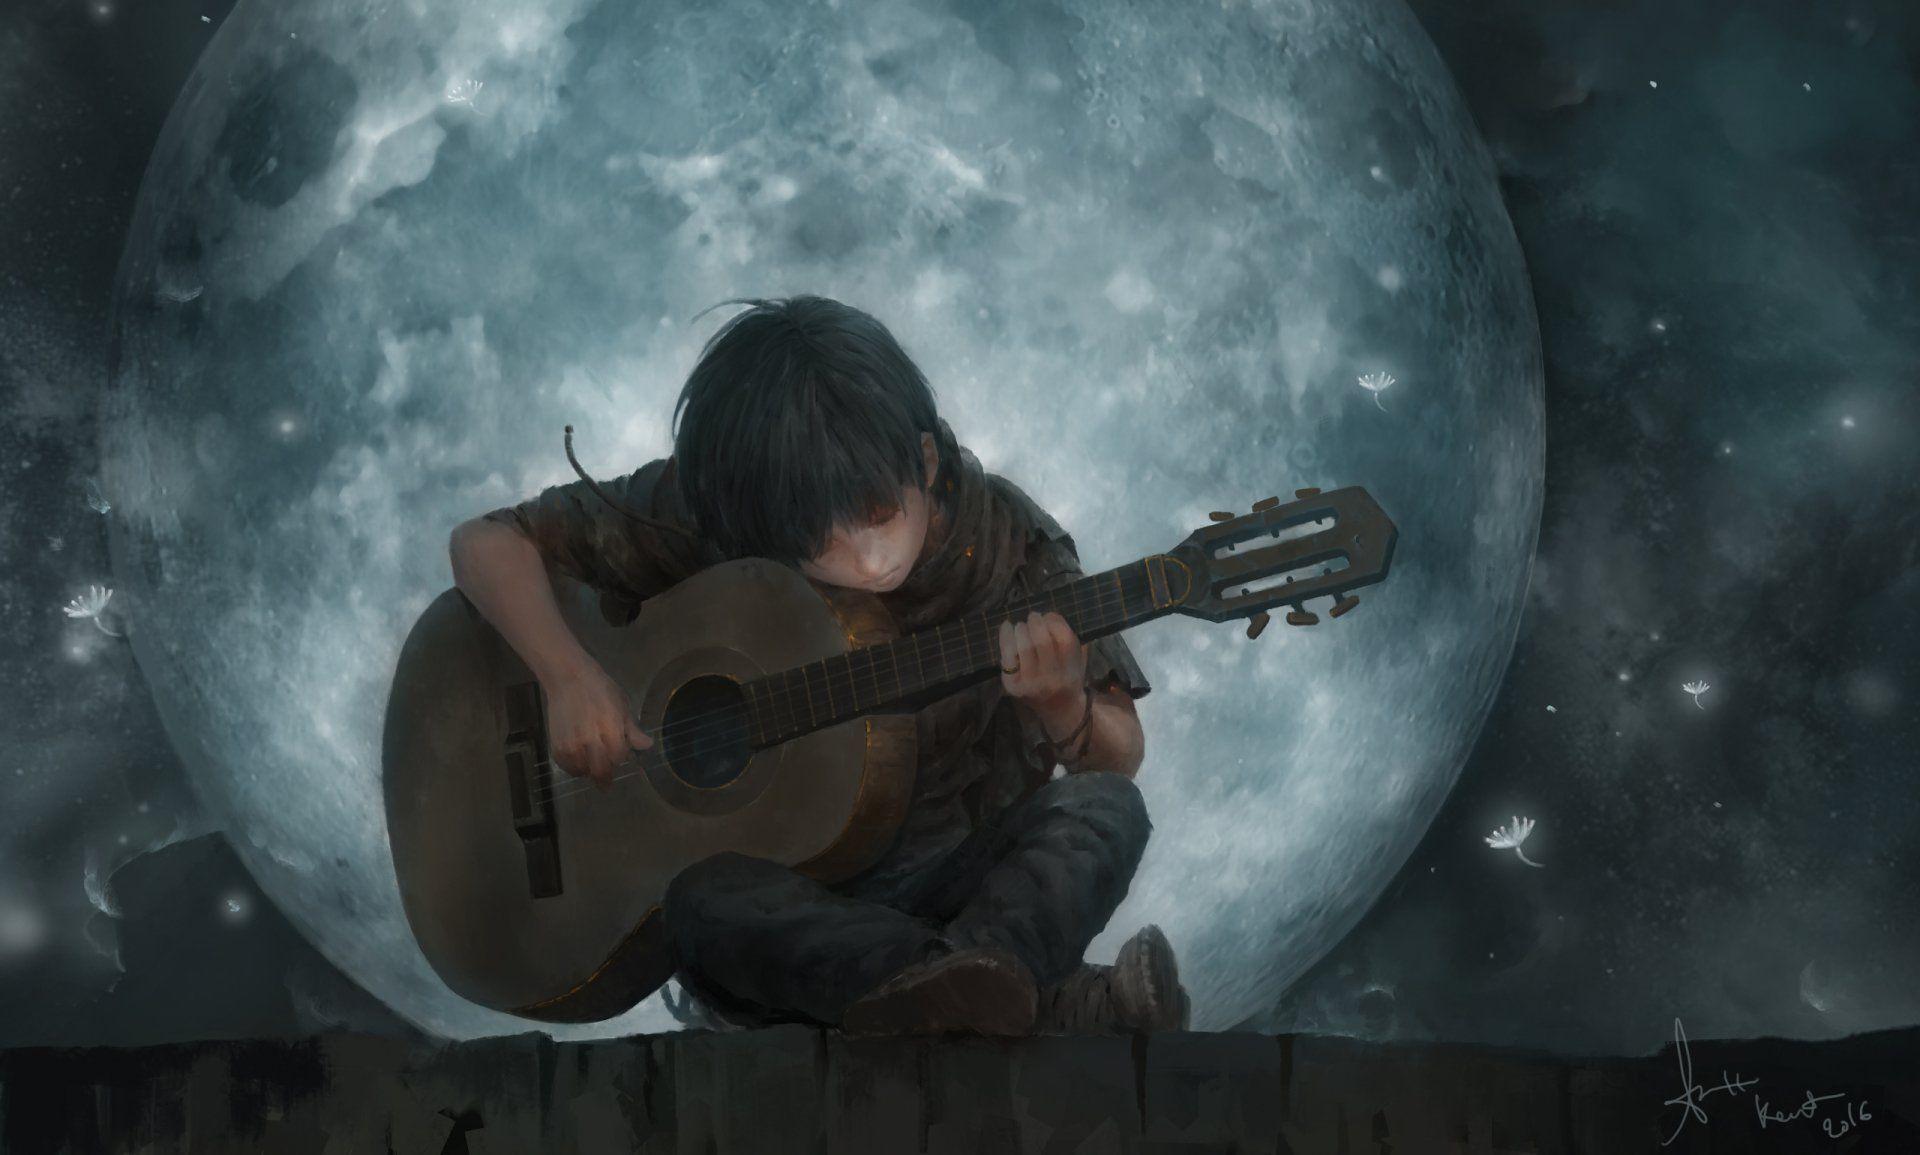 Artistic Child Moon Guitar Boy Wallpaper. Ảnh tường cho điện